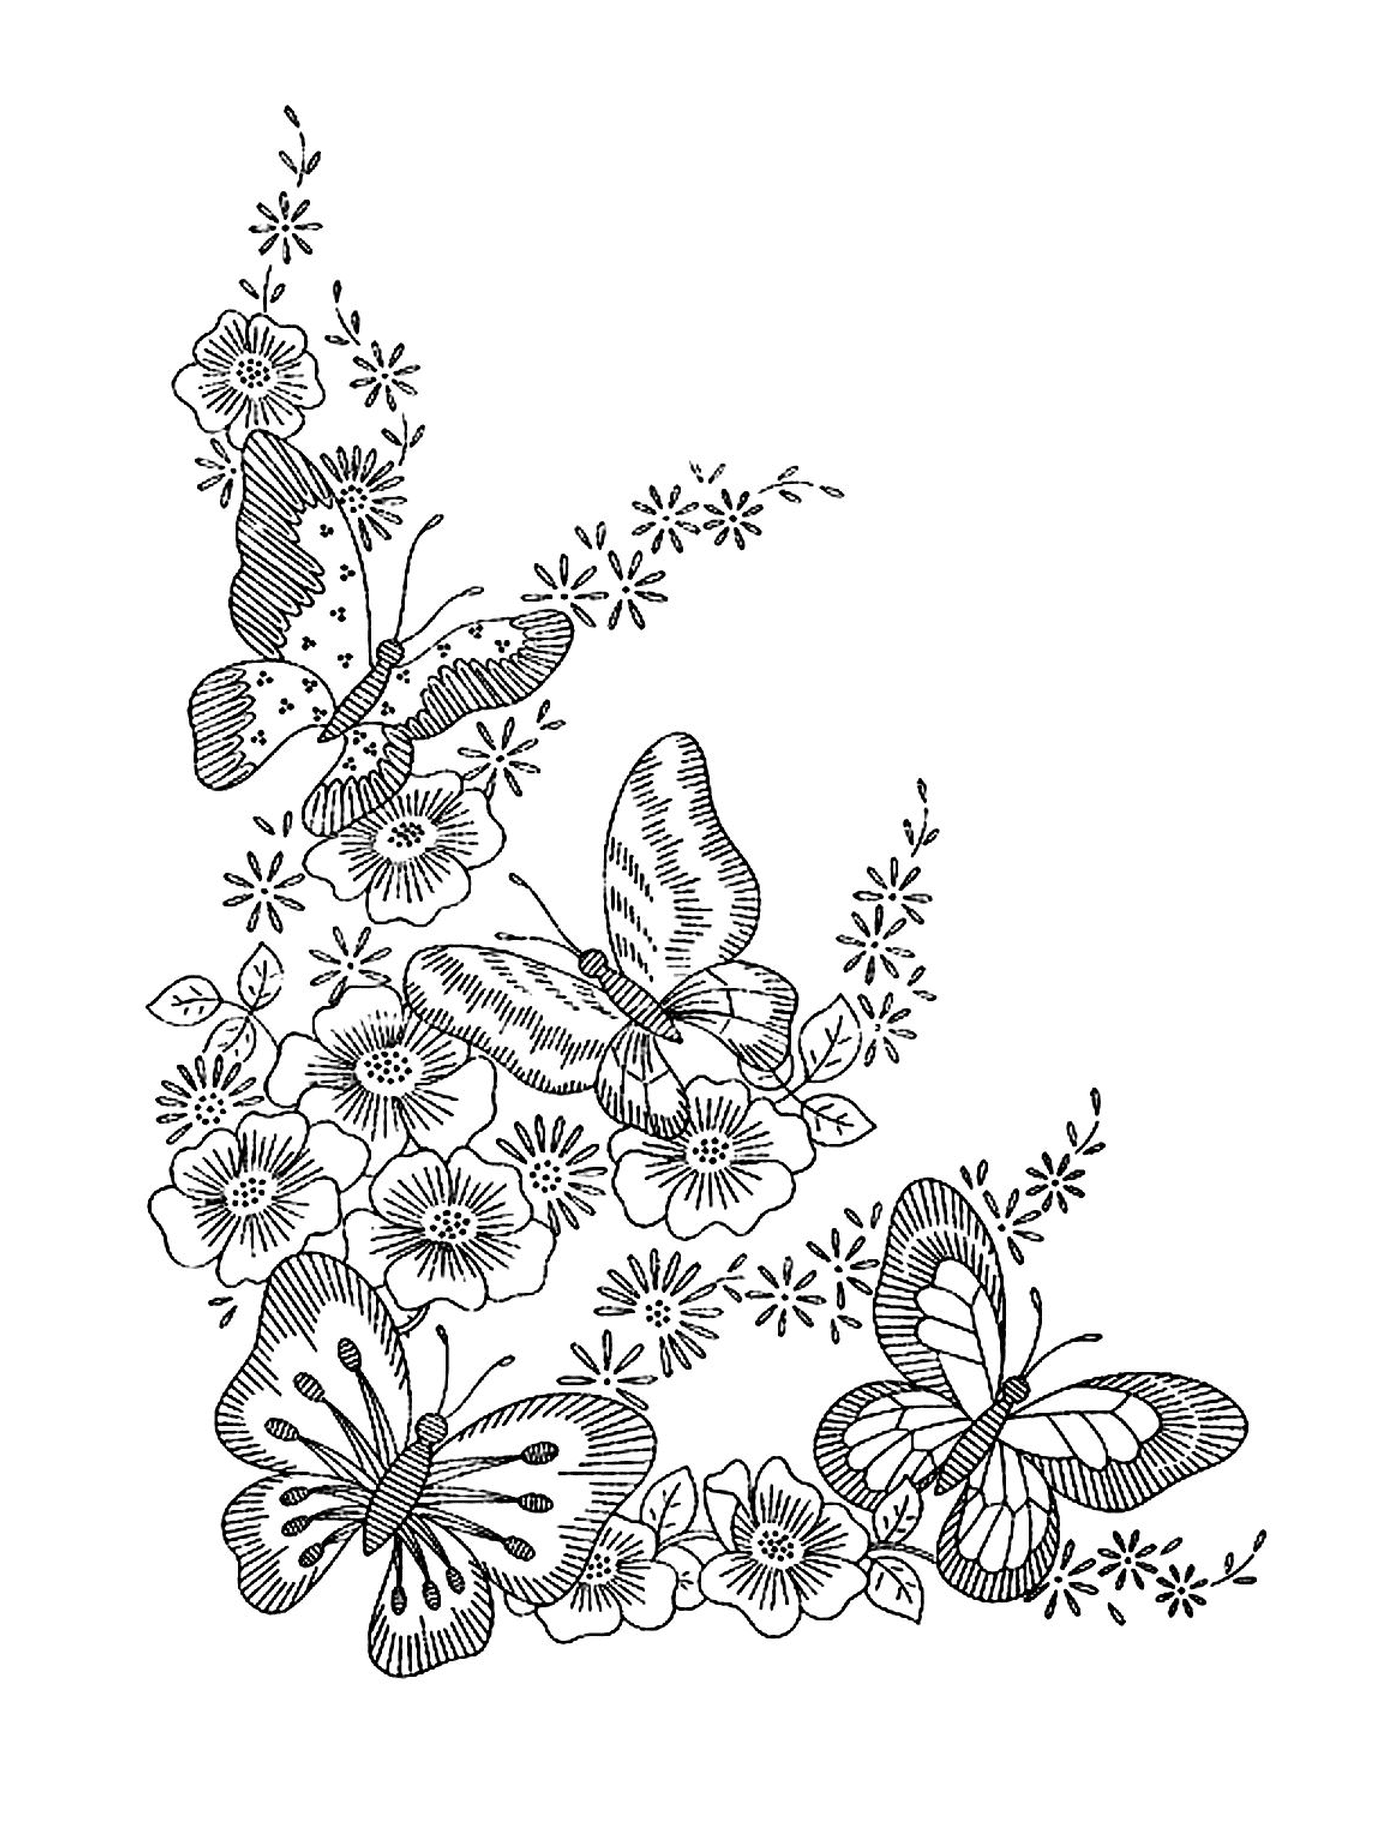   Papillons et fleurs magnifiques 